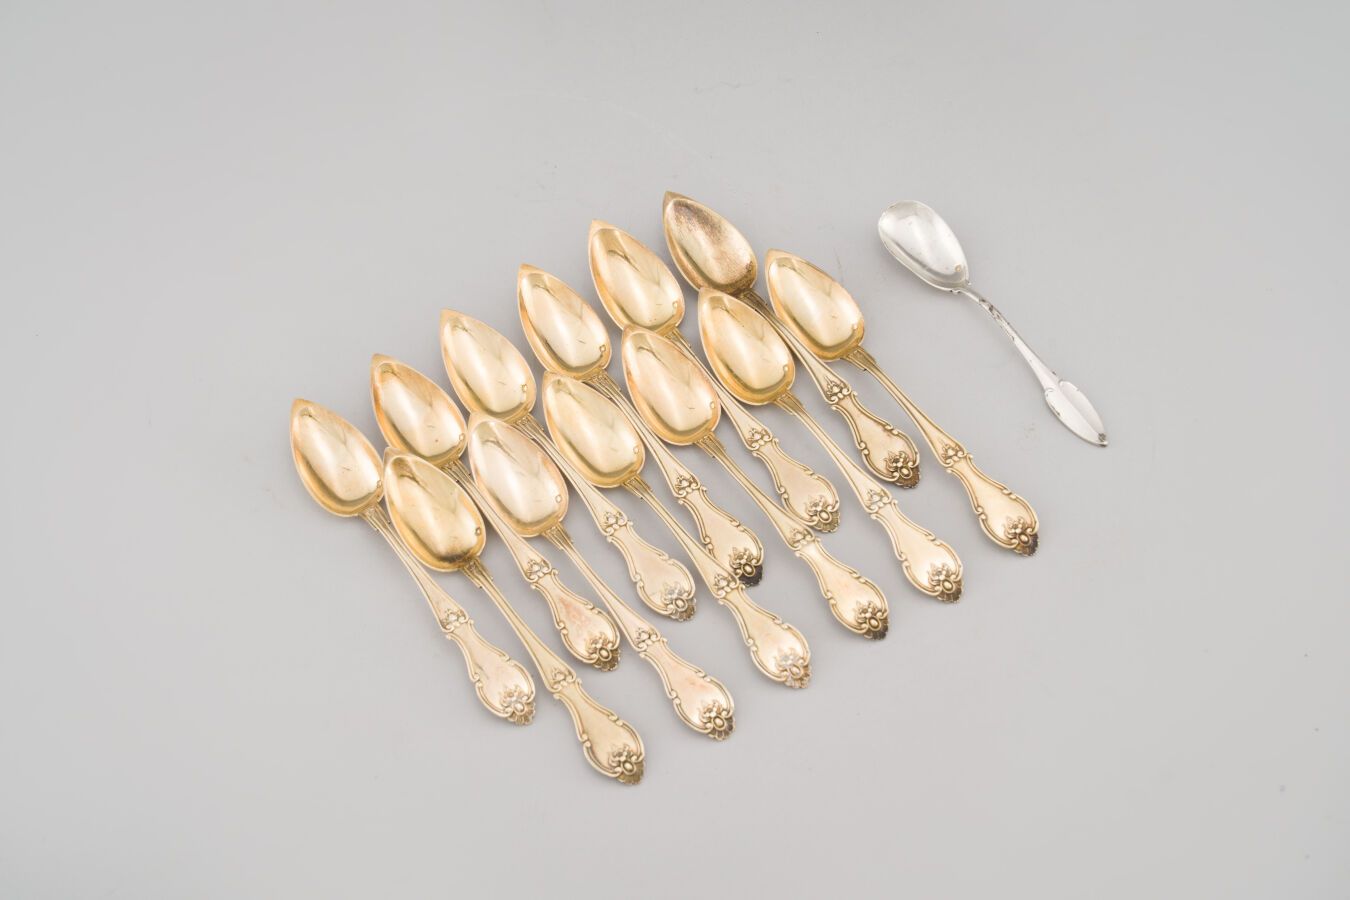 Null 88. Doce cucharas de té de plata dorada (800/1000),
modelo violín.
Siglo XI&hellip;